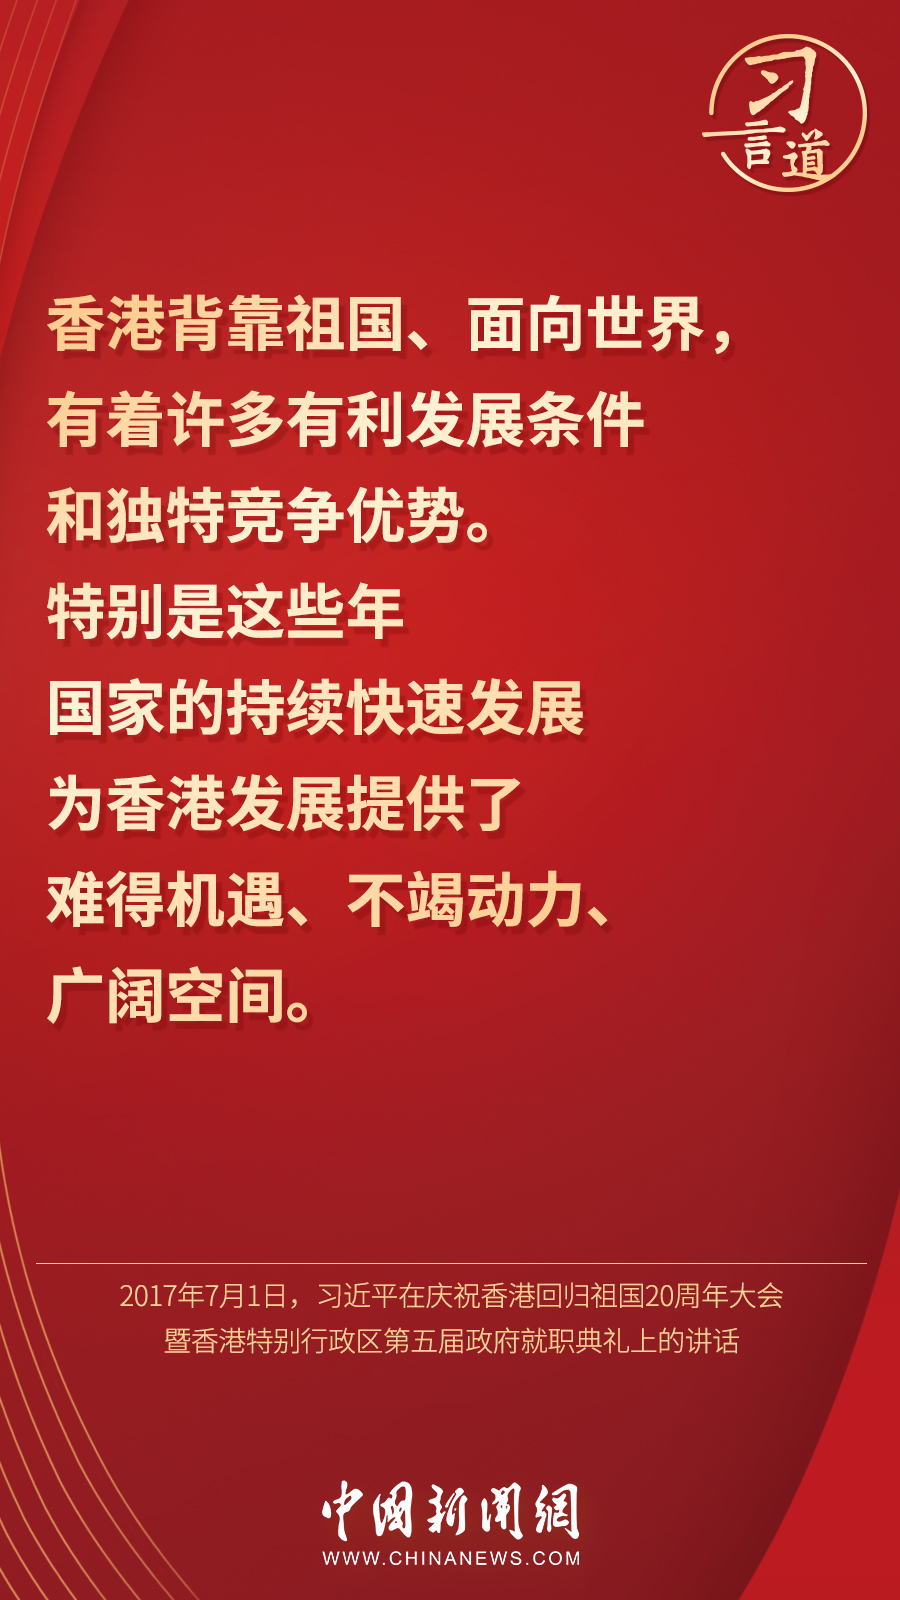 「明珠耀香江」习言道丨“香港的命运从来同祖国紧密相连”